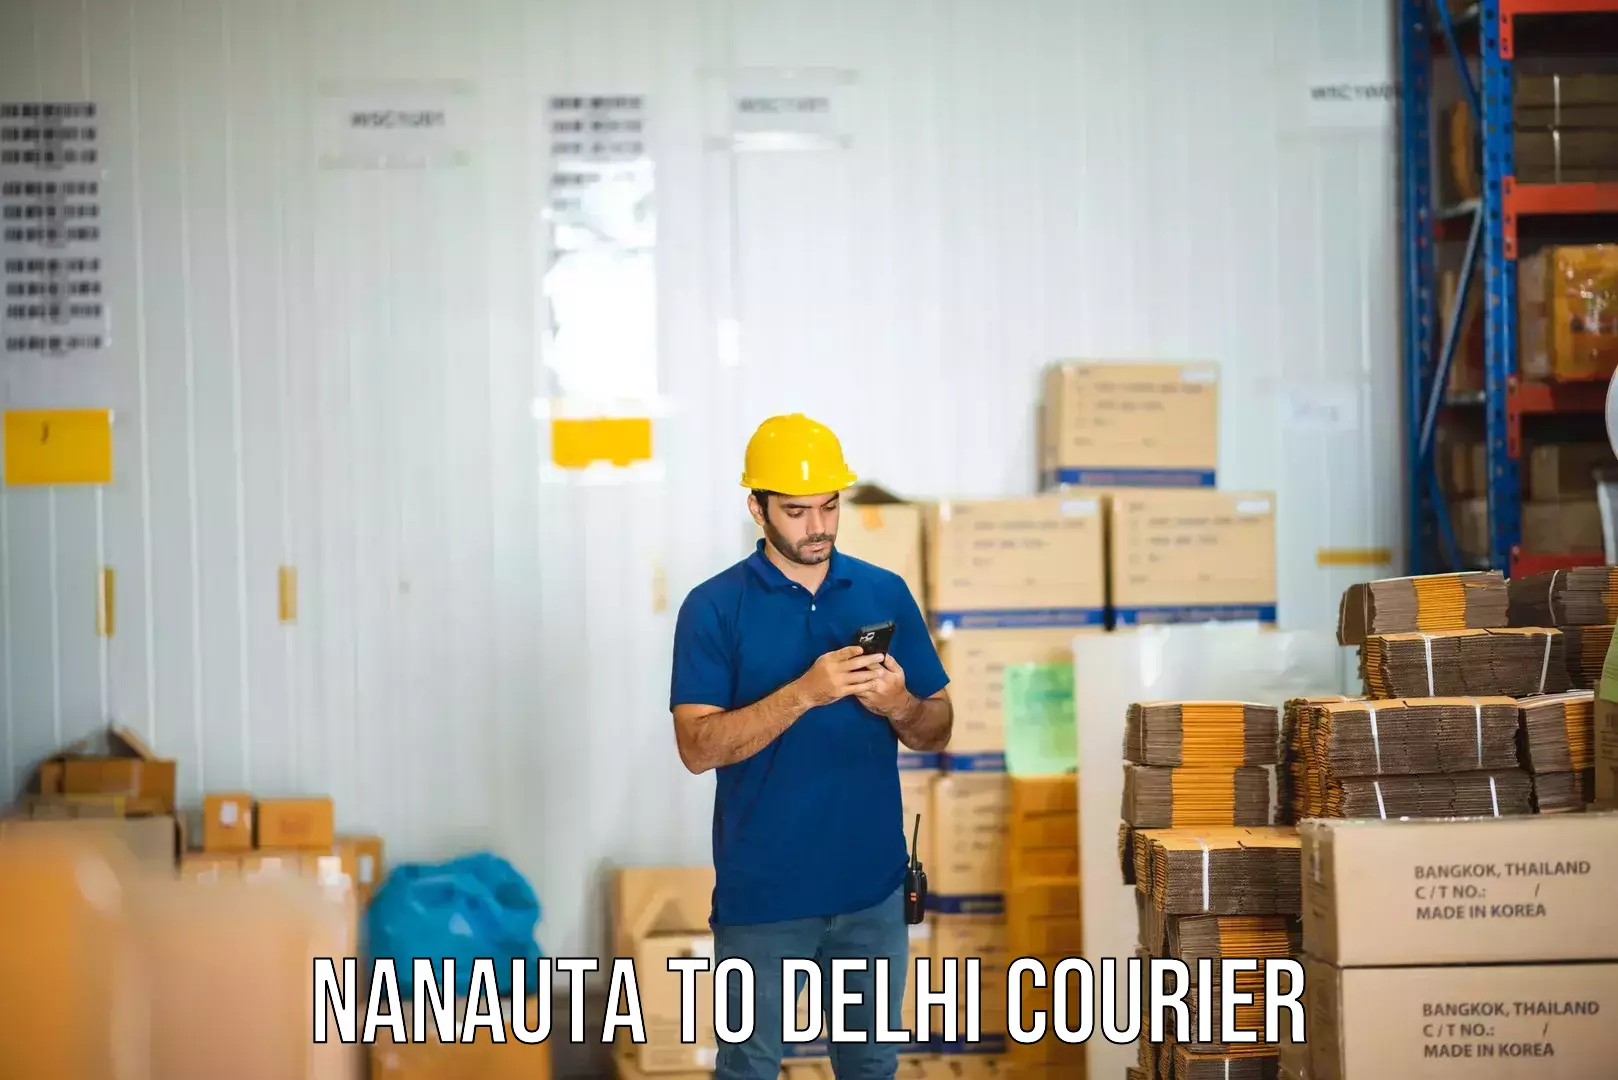 Courier service partnerships Nanauta to Sarojini Nagar